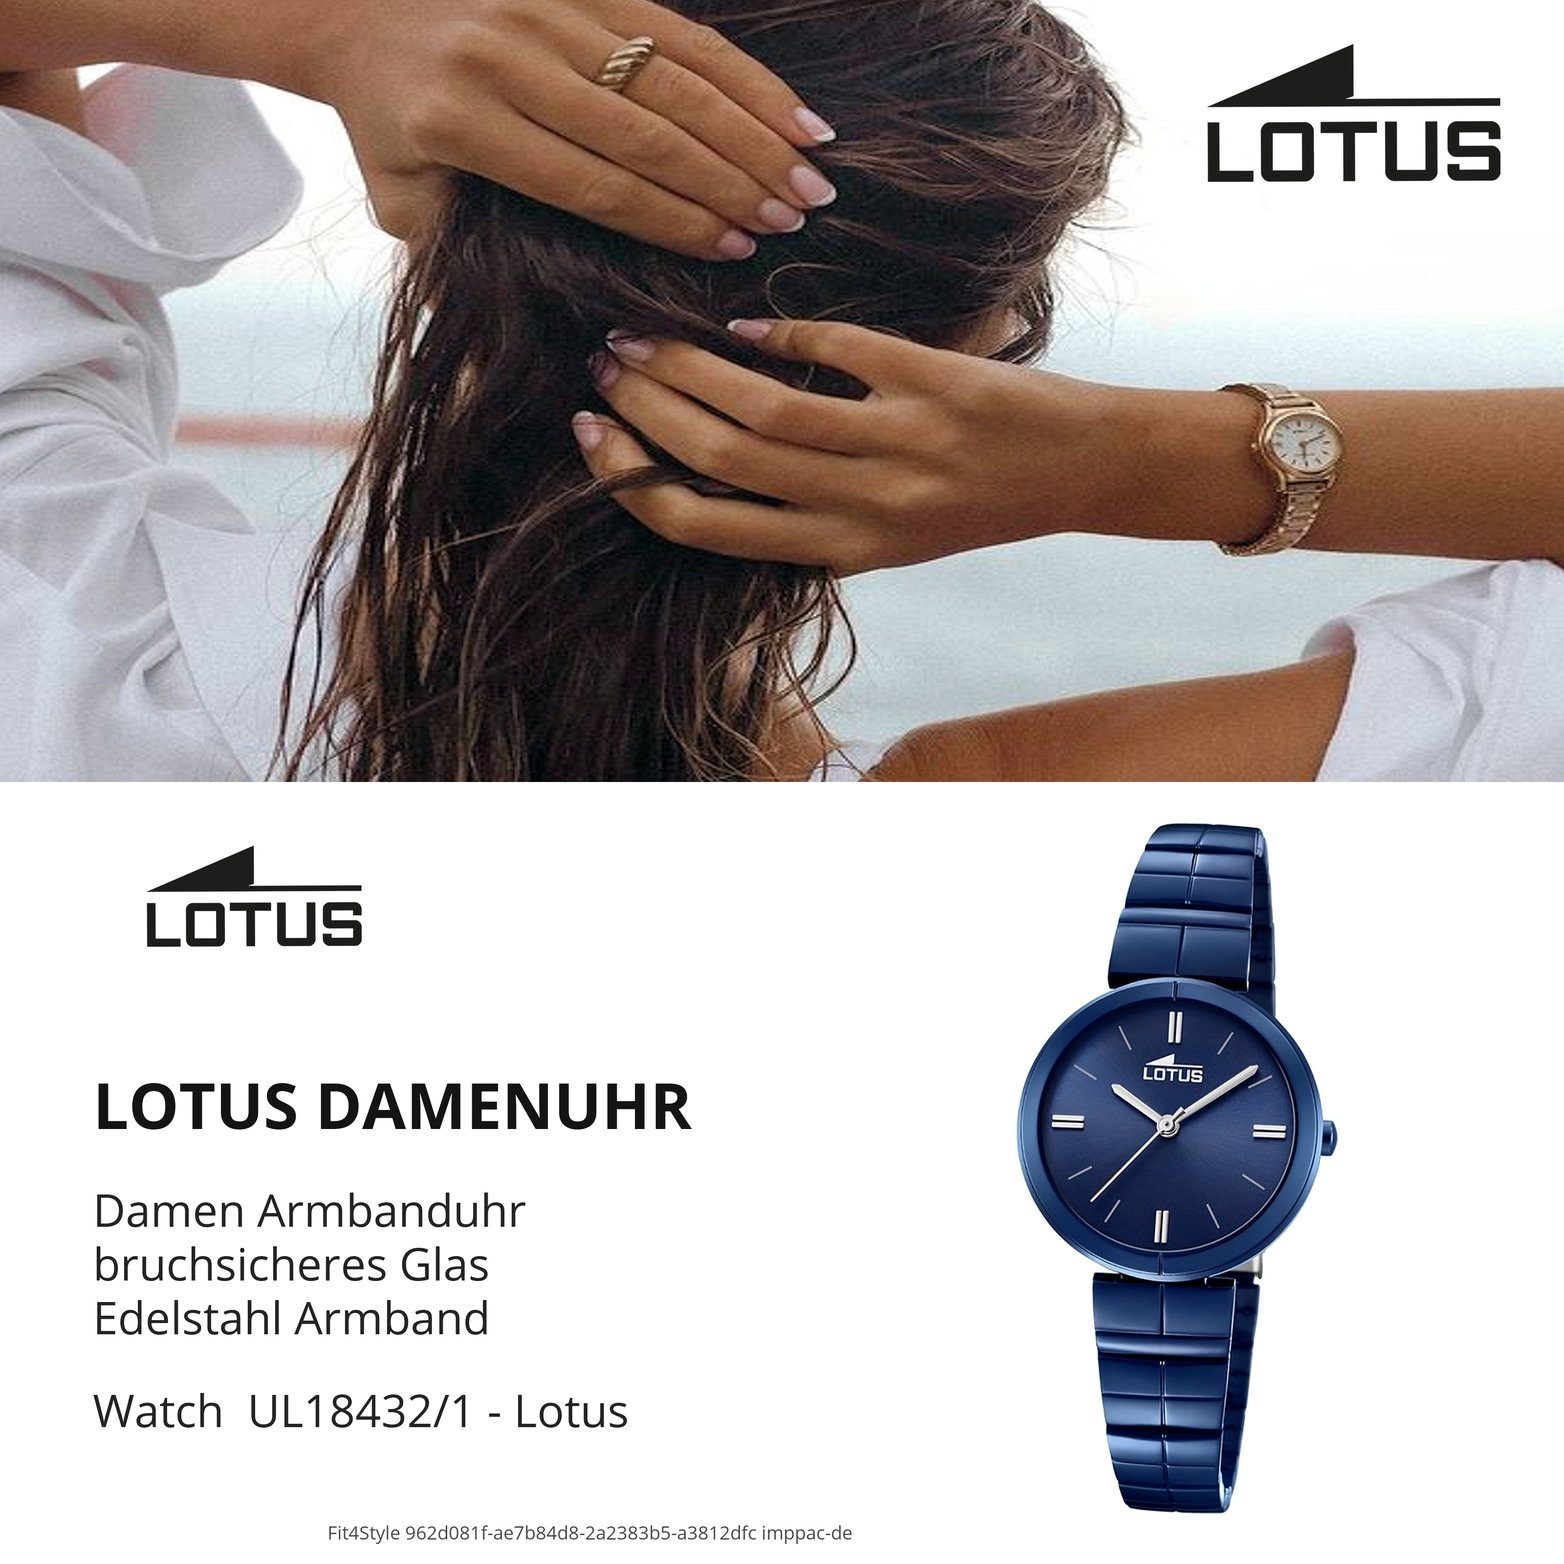 Damen Uhren Lotus Quarzuhr D2UL18432/1 Lotus Edelstahl Damen Uhr L18432/1, Damenuhr mit Edelstahlarmband, rundes Gehäuse, klein 